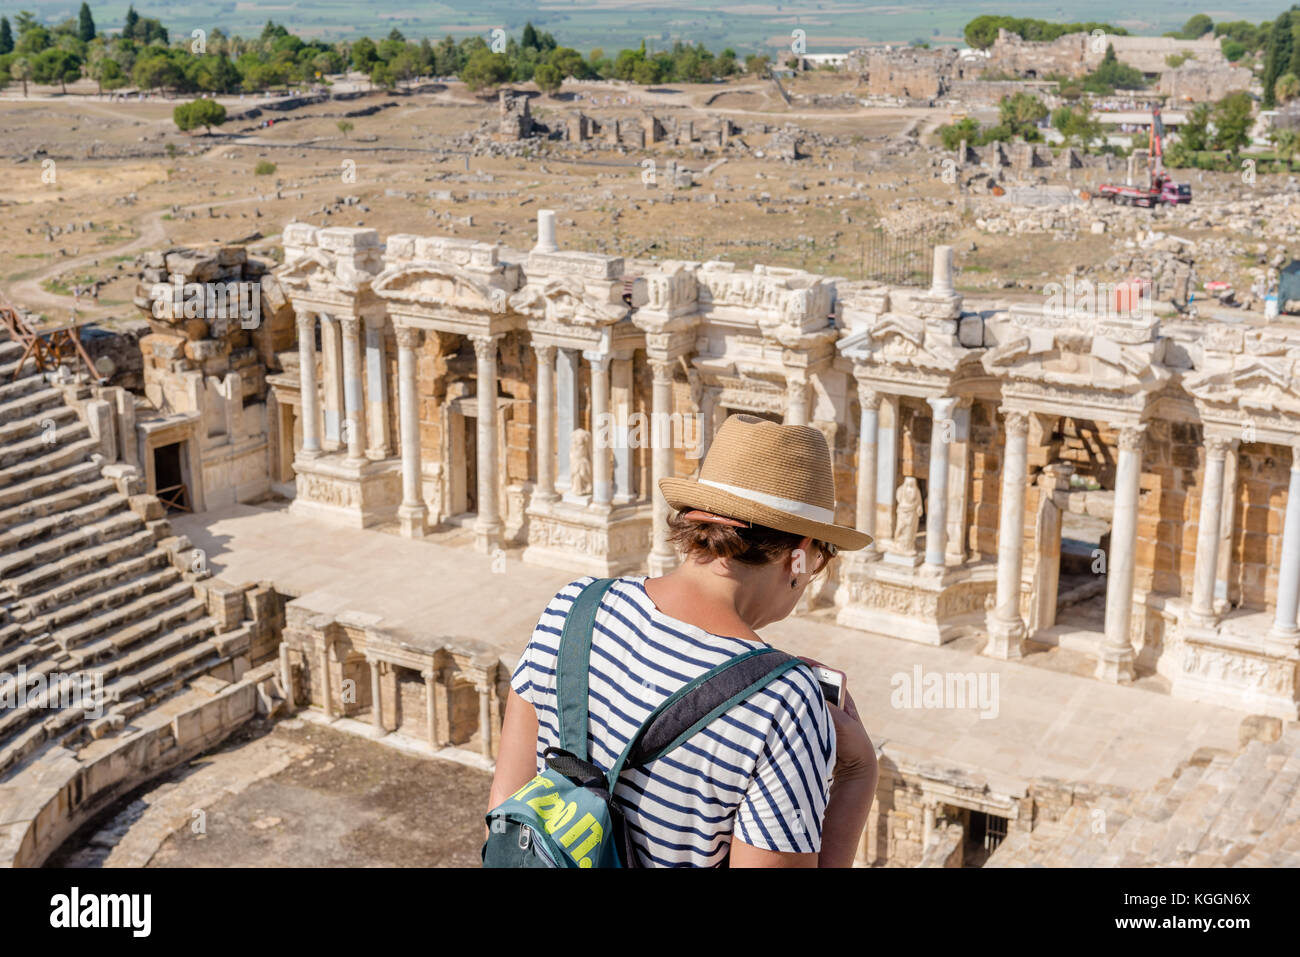 Les gens visiter les ruines du théâtre antique de l'ancienne ville grecque Hiérapolis, Pamukkale, Turquie.25 août 2017 Banque D'Images